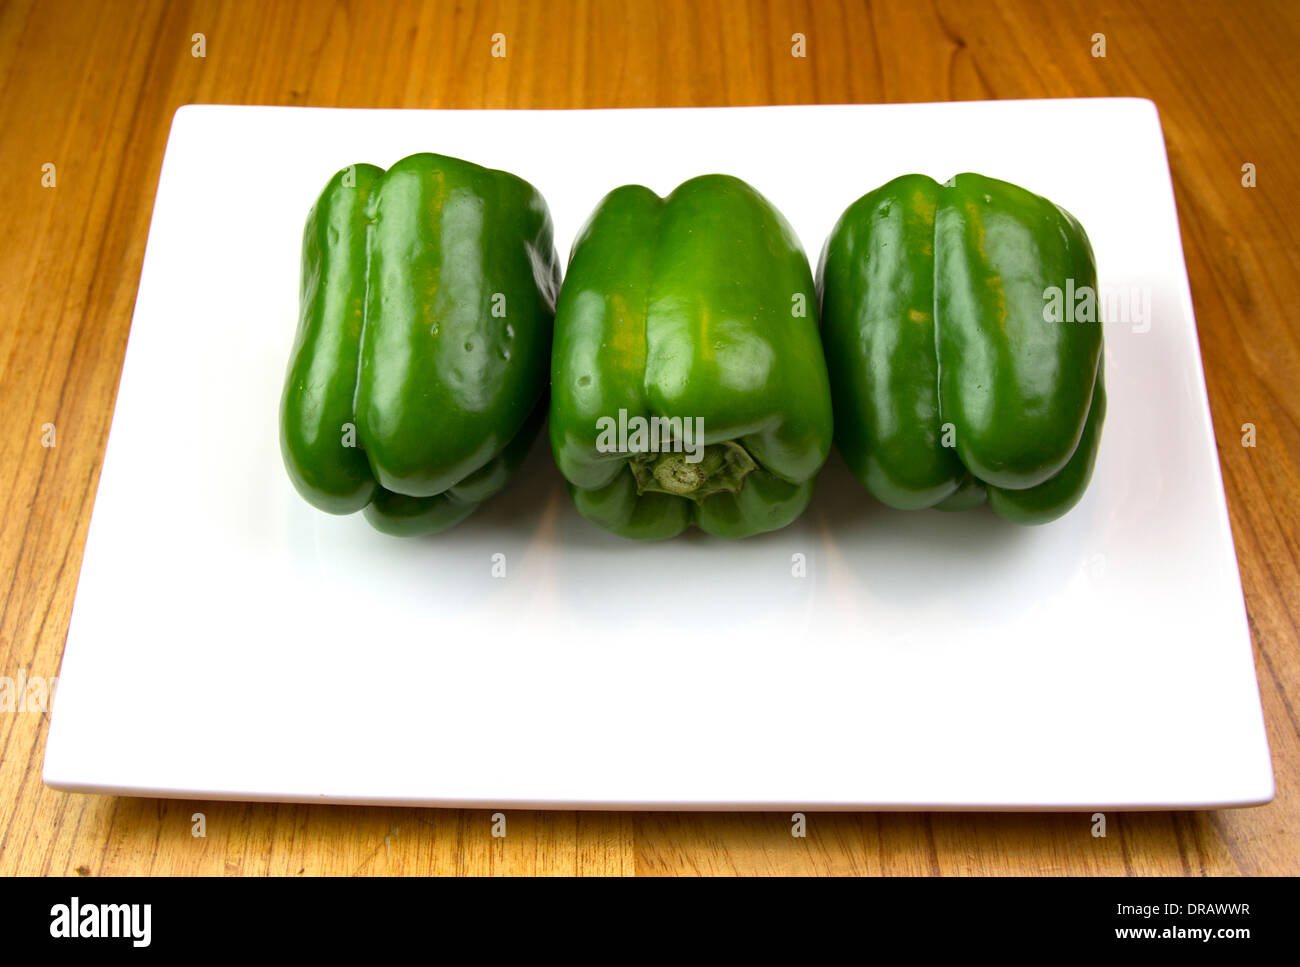 3 grüne Paprika auf einem weißen Teller auf einer hölzernen Theke Stockfoto